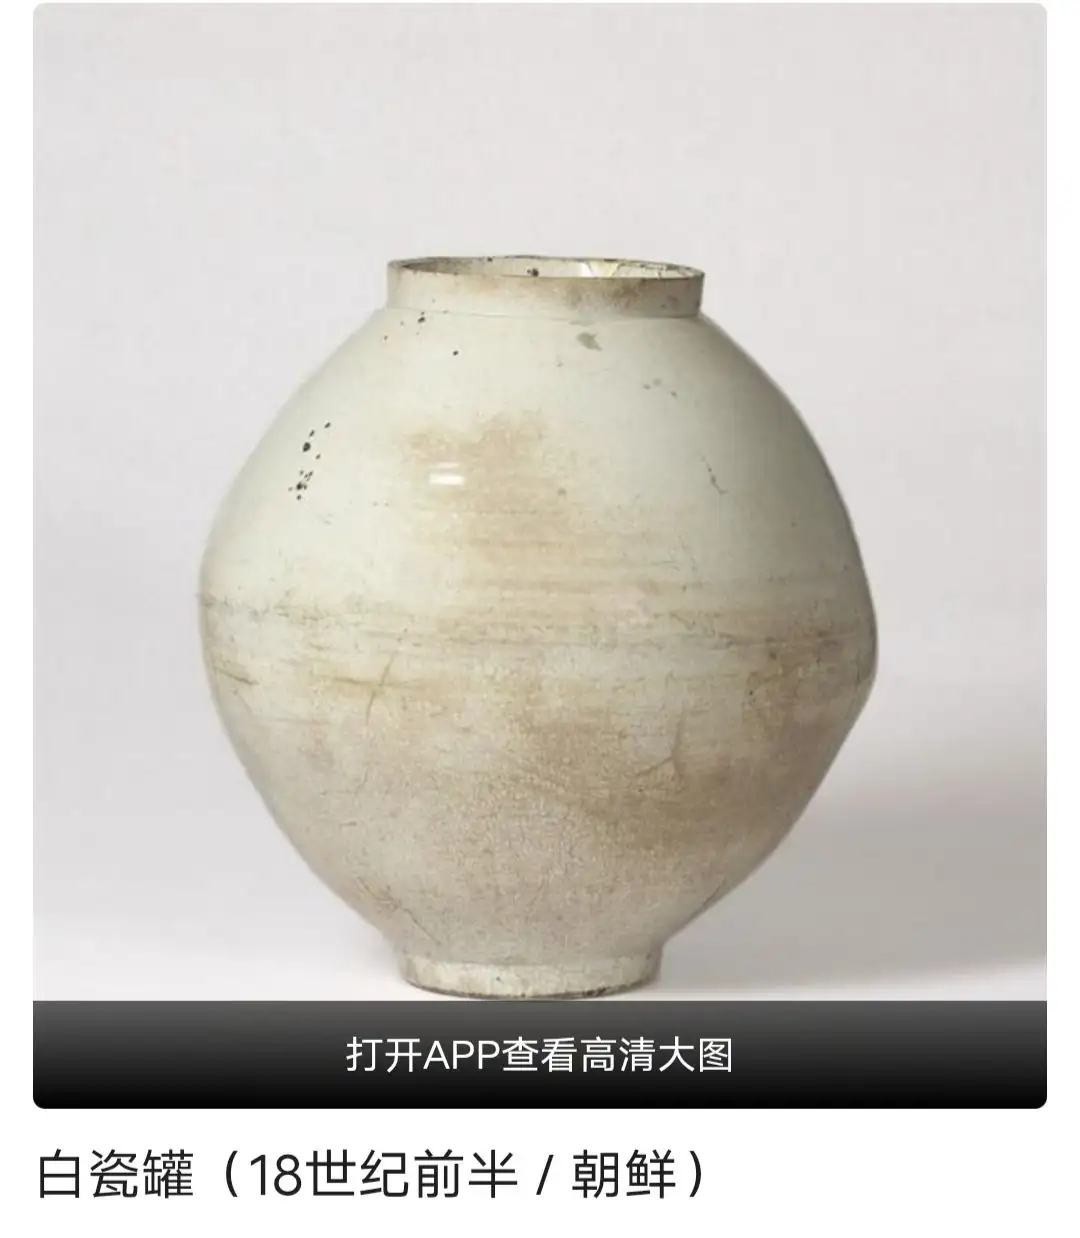 为什么那么多人喜欢中国瓷器艺术品？它究竟有何秘密呢？ - 星球研究所